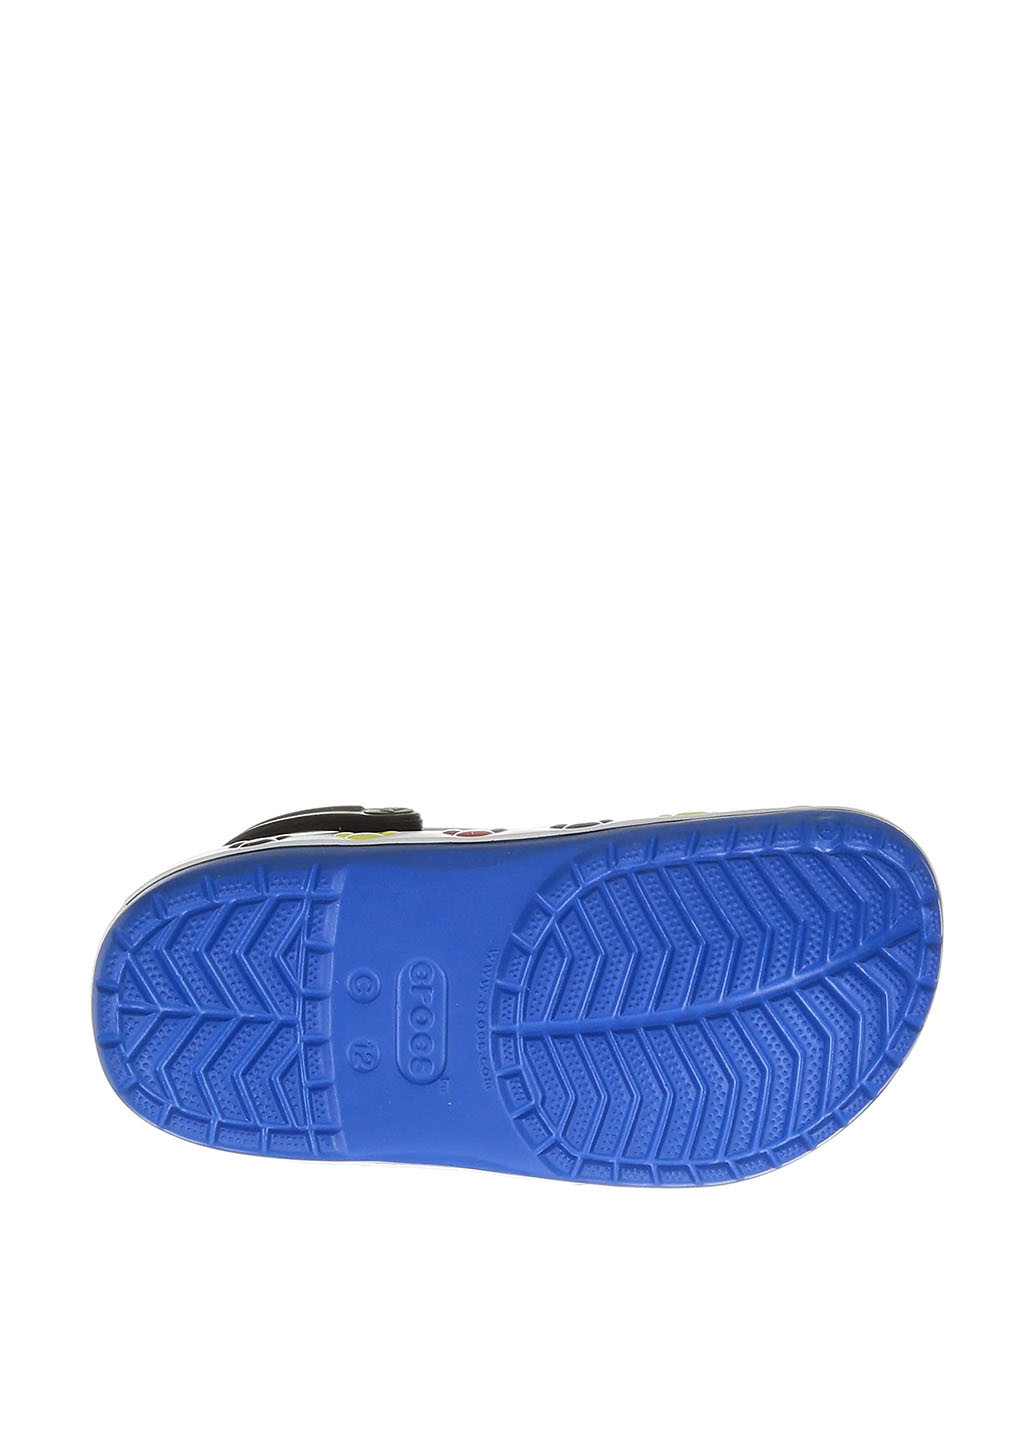 Синие сабо Crocs с перфорацией, с аппликацией